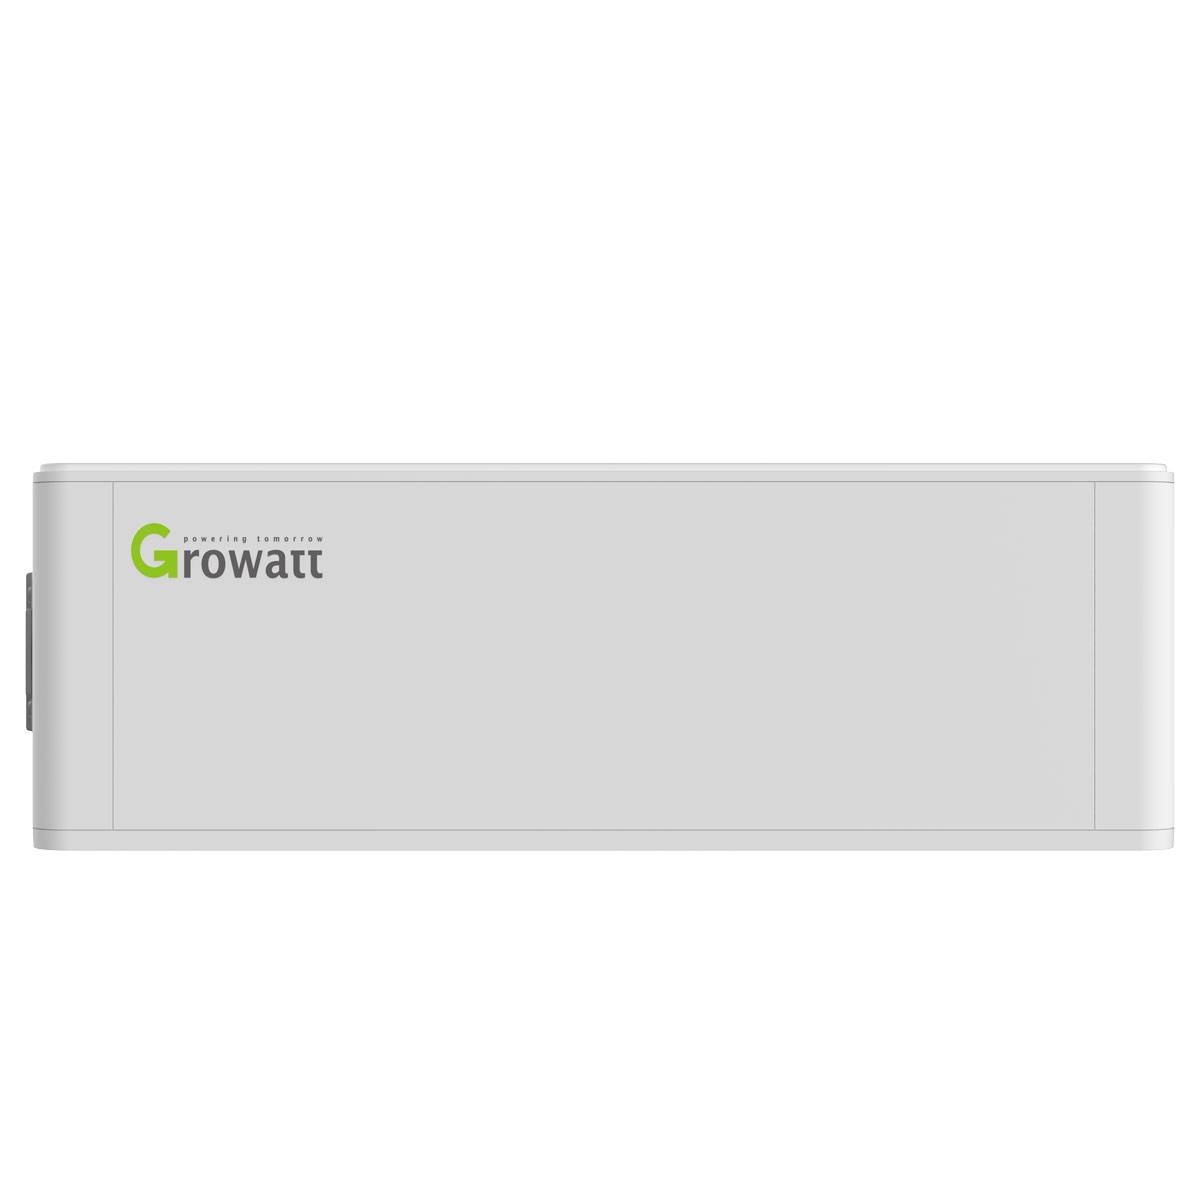 Growatt HVC 60050-A1 Hochvolt Batterie Management System